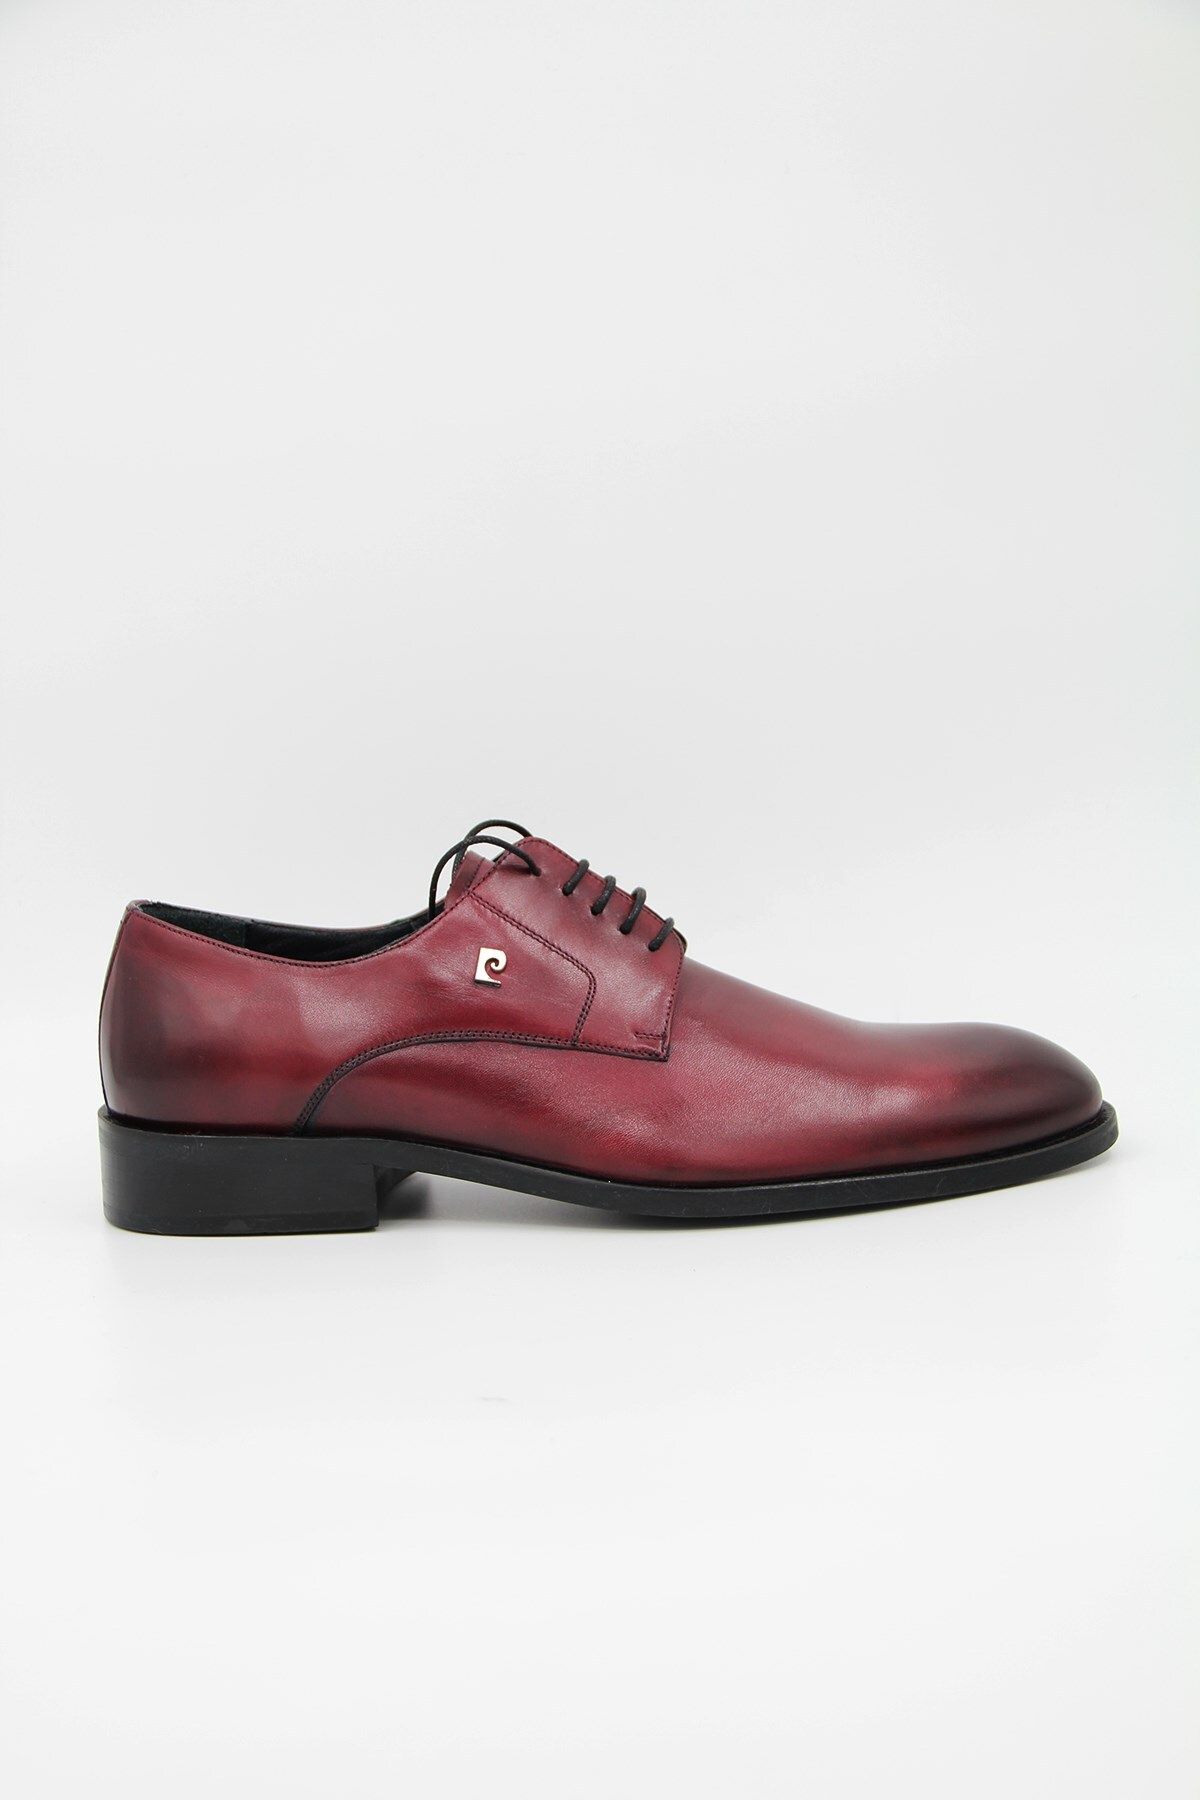 Pierre Cardin 10335 Erkek Klasik Ayakkabı - Bordo